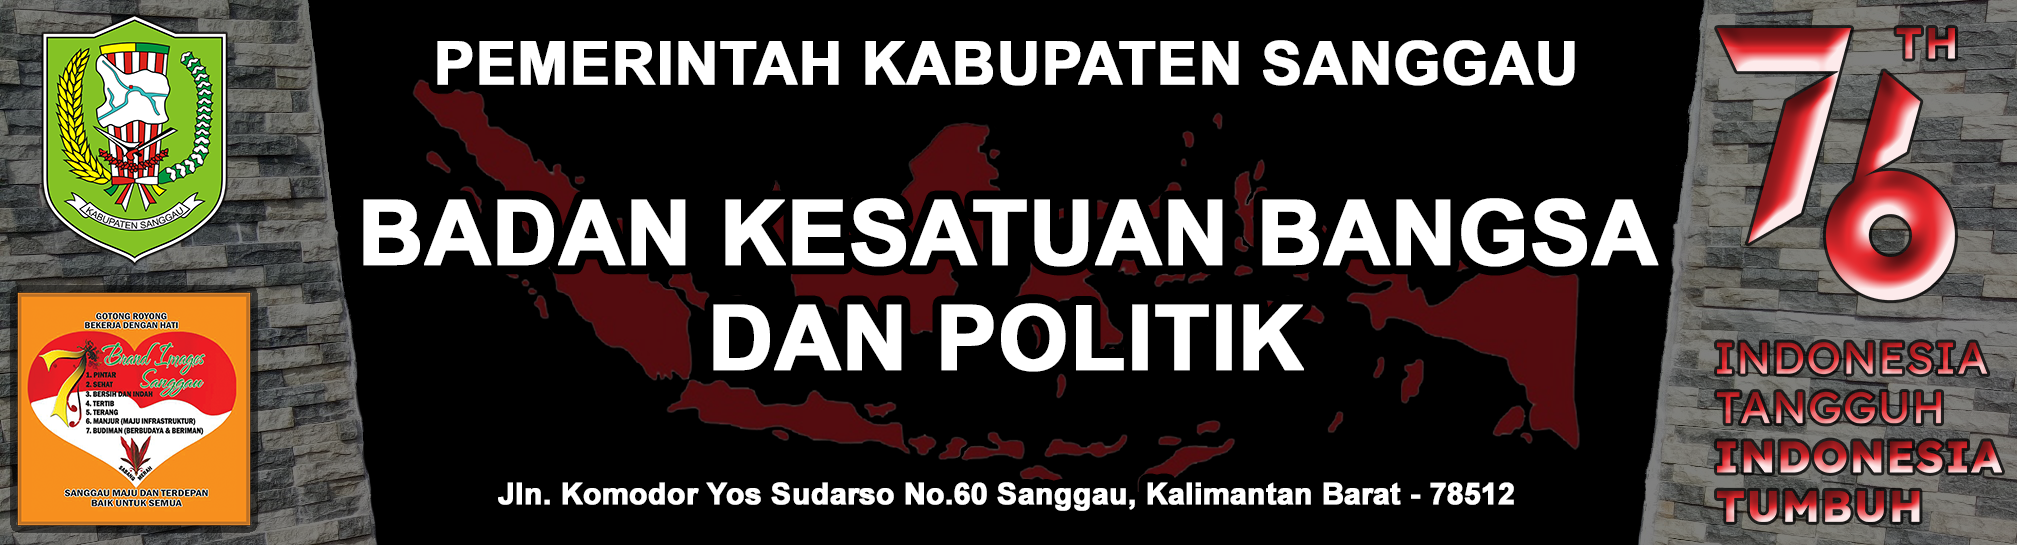 Badan Kesatuan Bangsa dan Politik Kabupaten Sanggau